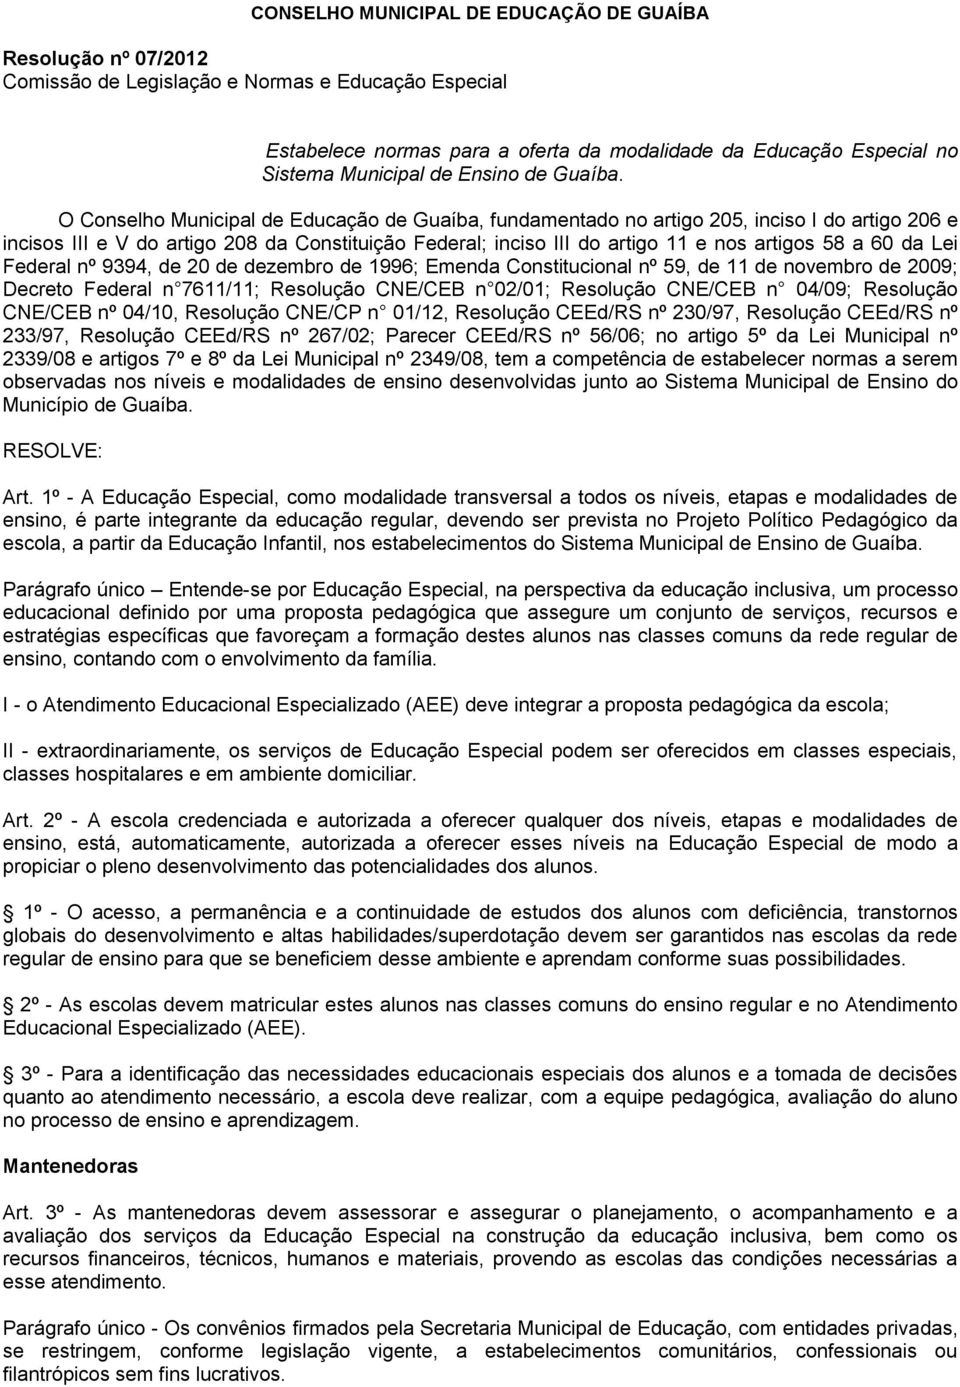 O Conselho Municipal de Educação de Guaíba, fundamentado no artigo 205, inciso I do artigo 206 e incisos III e V do artigo 208 da Constituição Federal; inciso III do artigo 11 e nos artigos 58 a 60